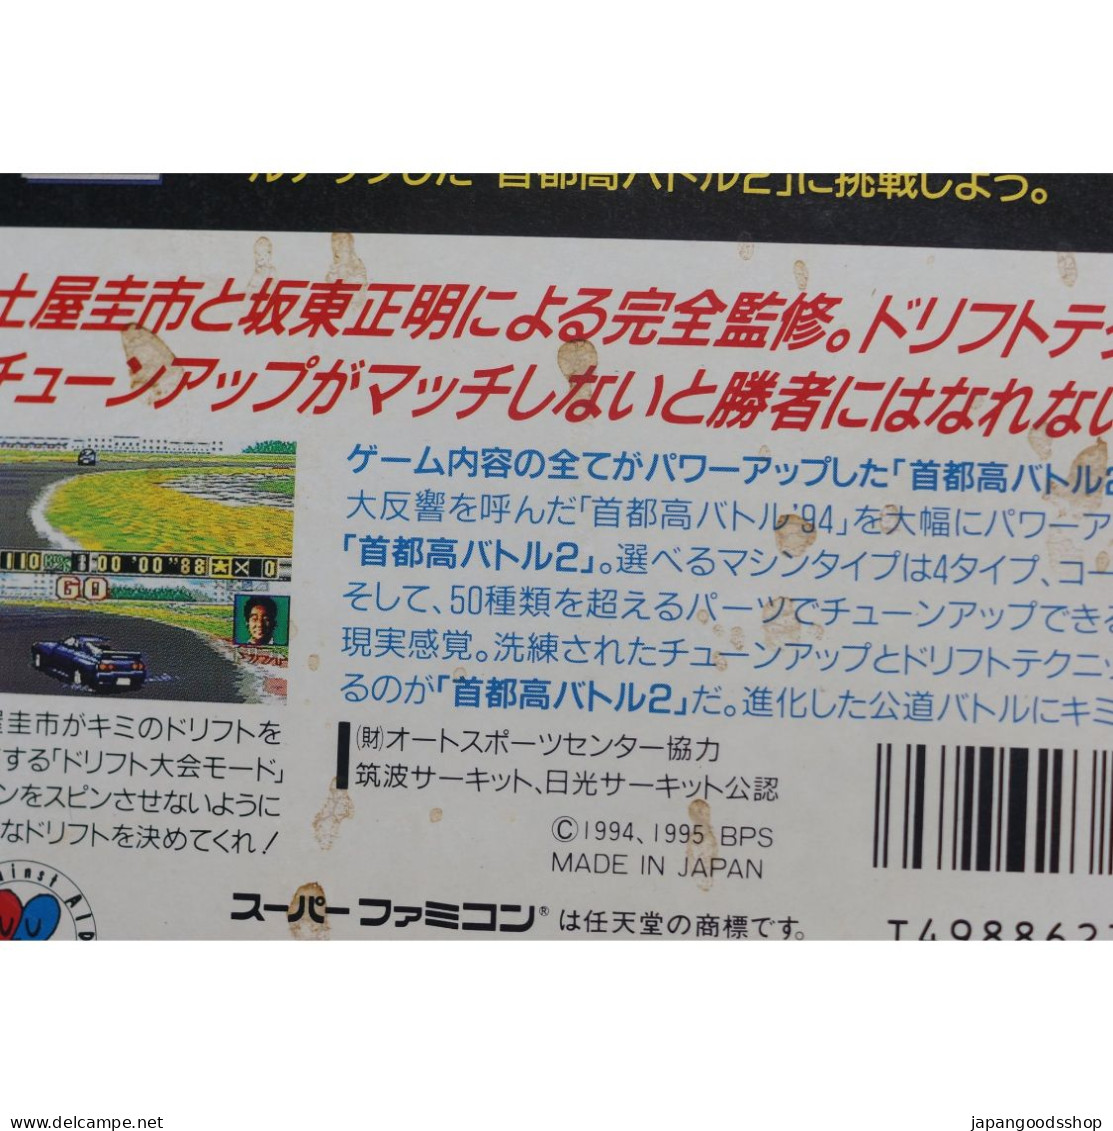 Super Famicom Drift King Shutokou Battle 2 SHVC-ASXJ-JPN - Super Famicom